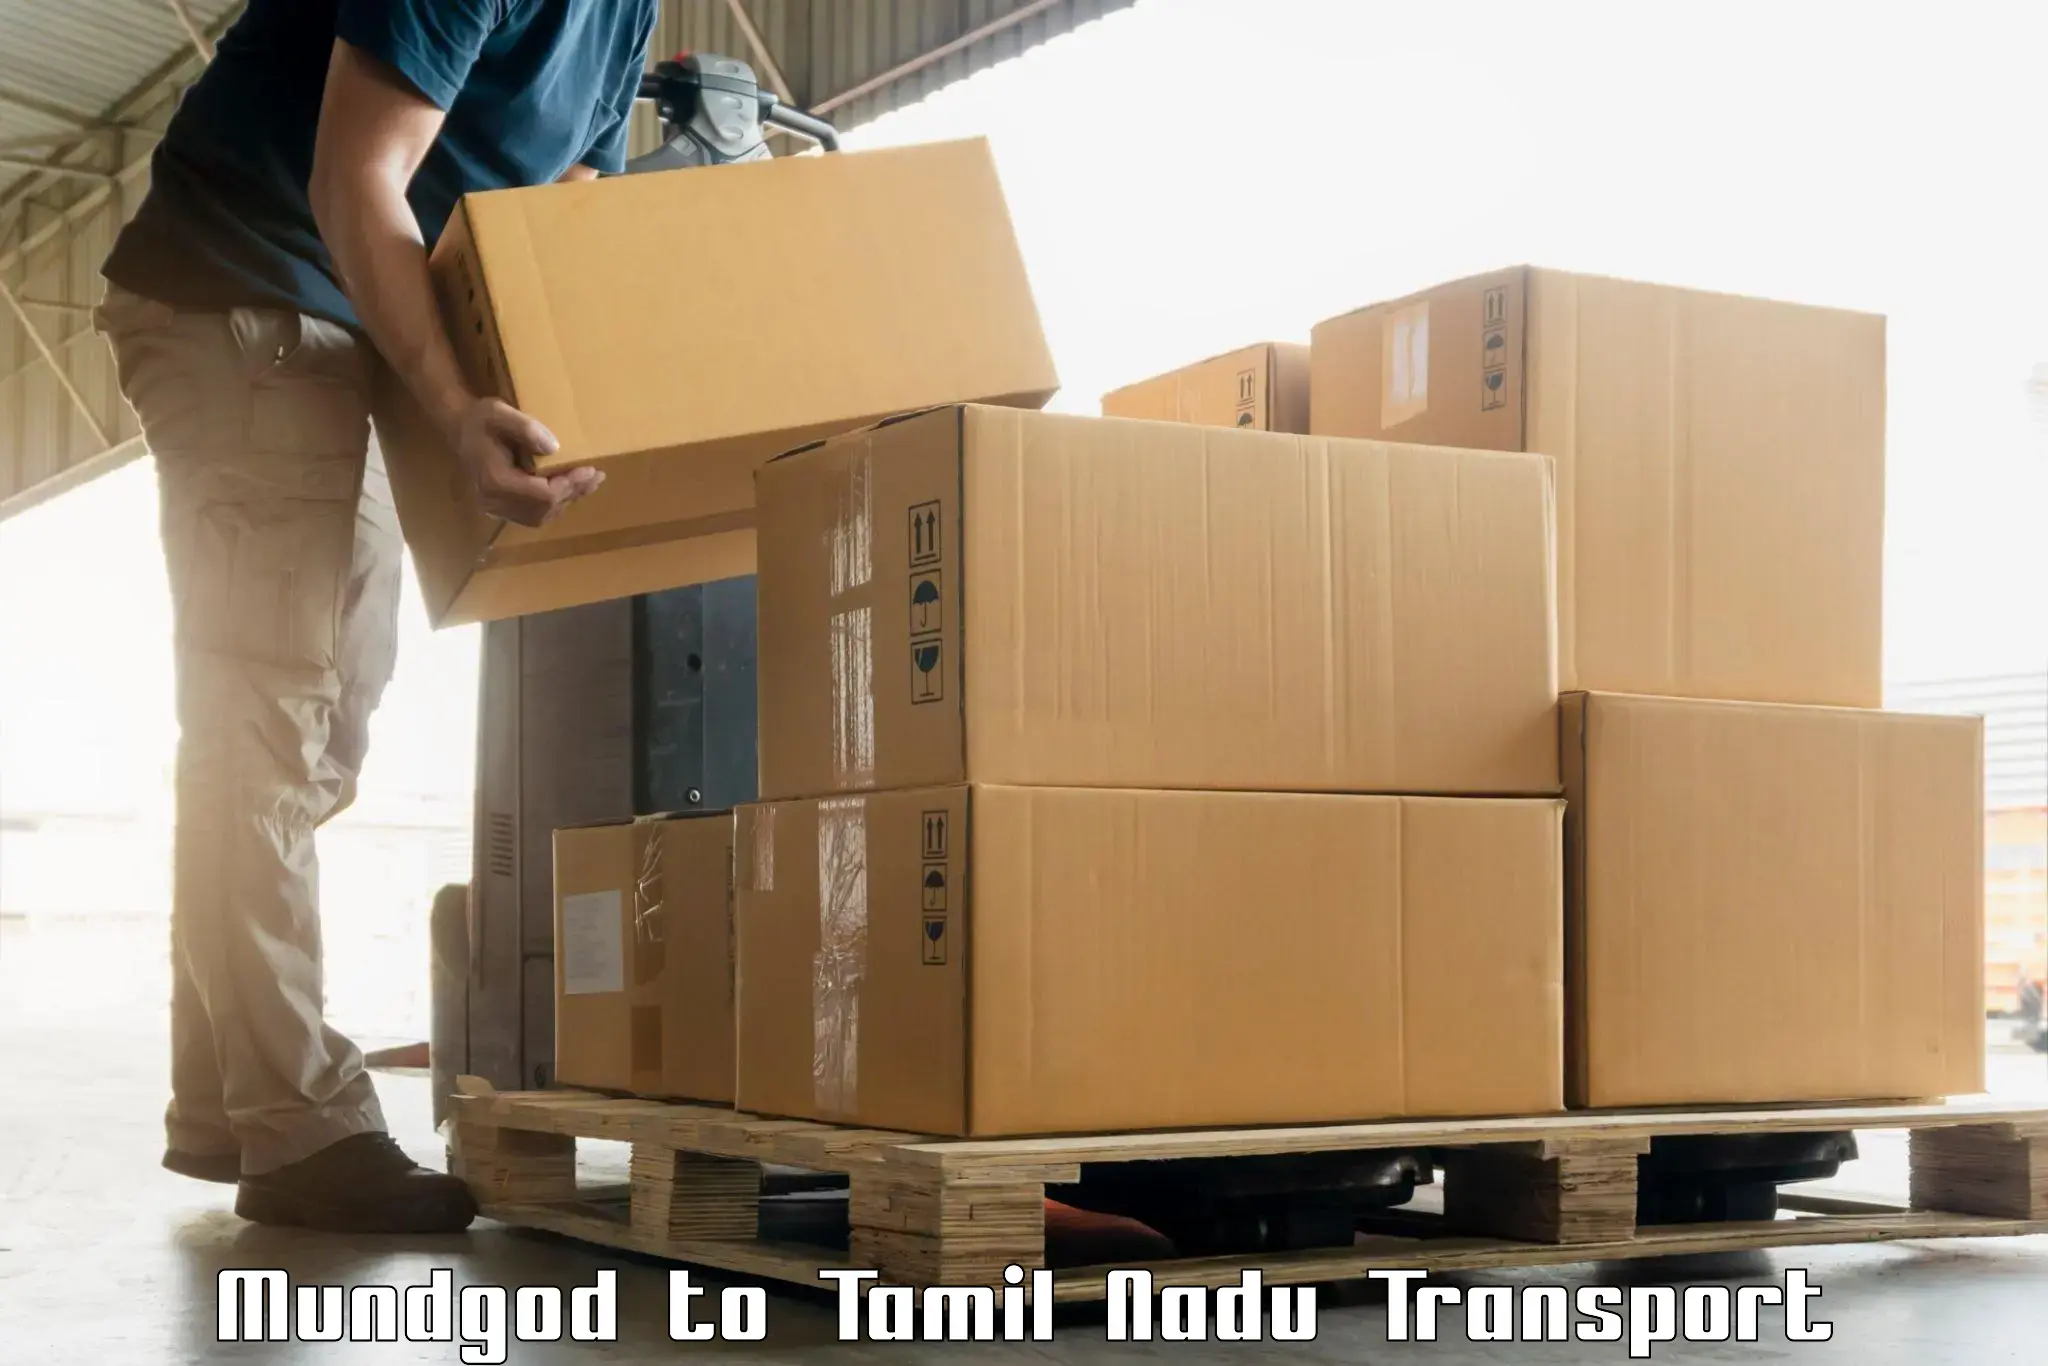 Interstate goods transport Mundgod to Sirkali